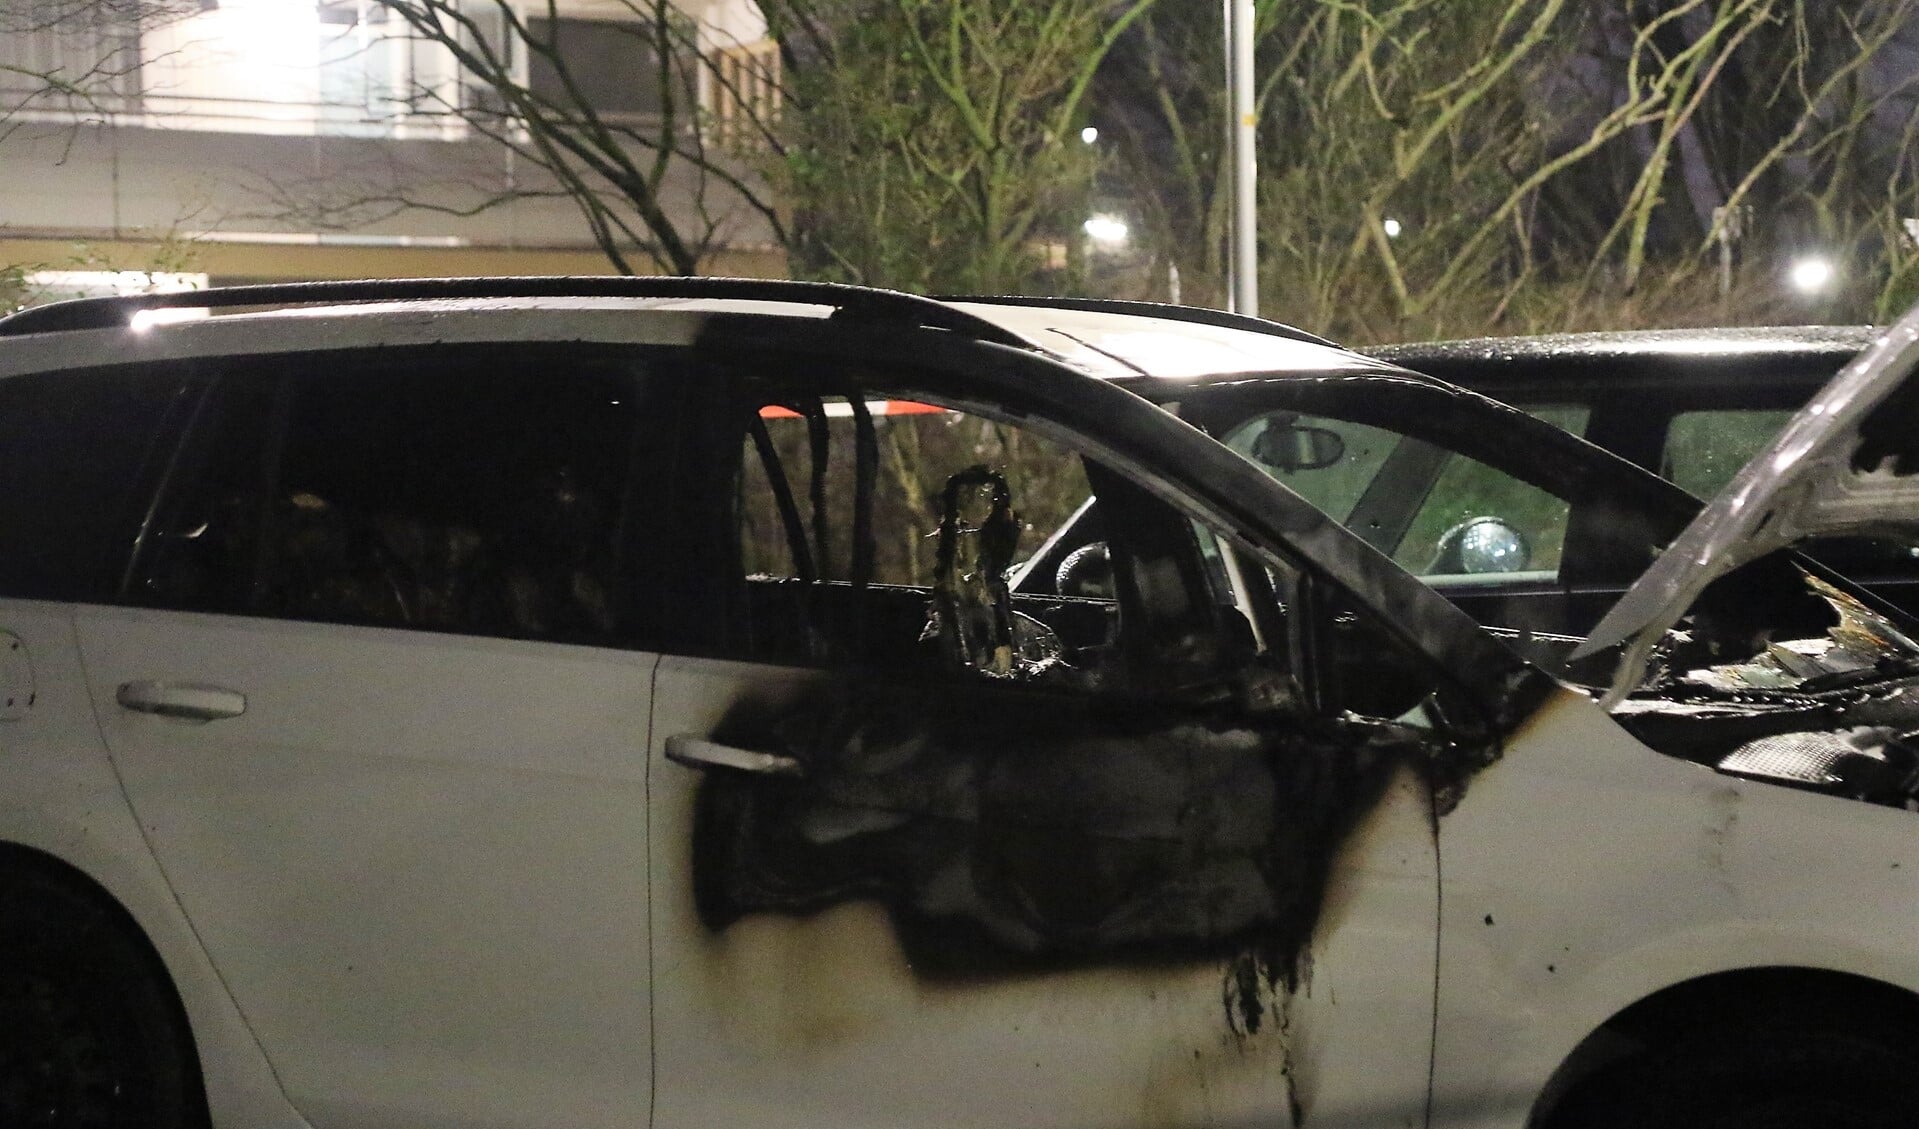 De afgelopen maanden wordt Leidschendam-Voorburg geteisterd door een reeks van autobrandjes en vernielingen met vuurwerk (archieffoto).